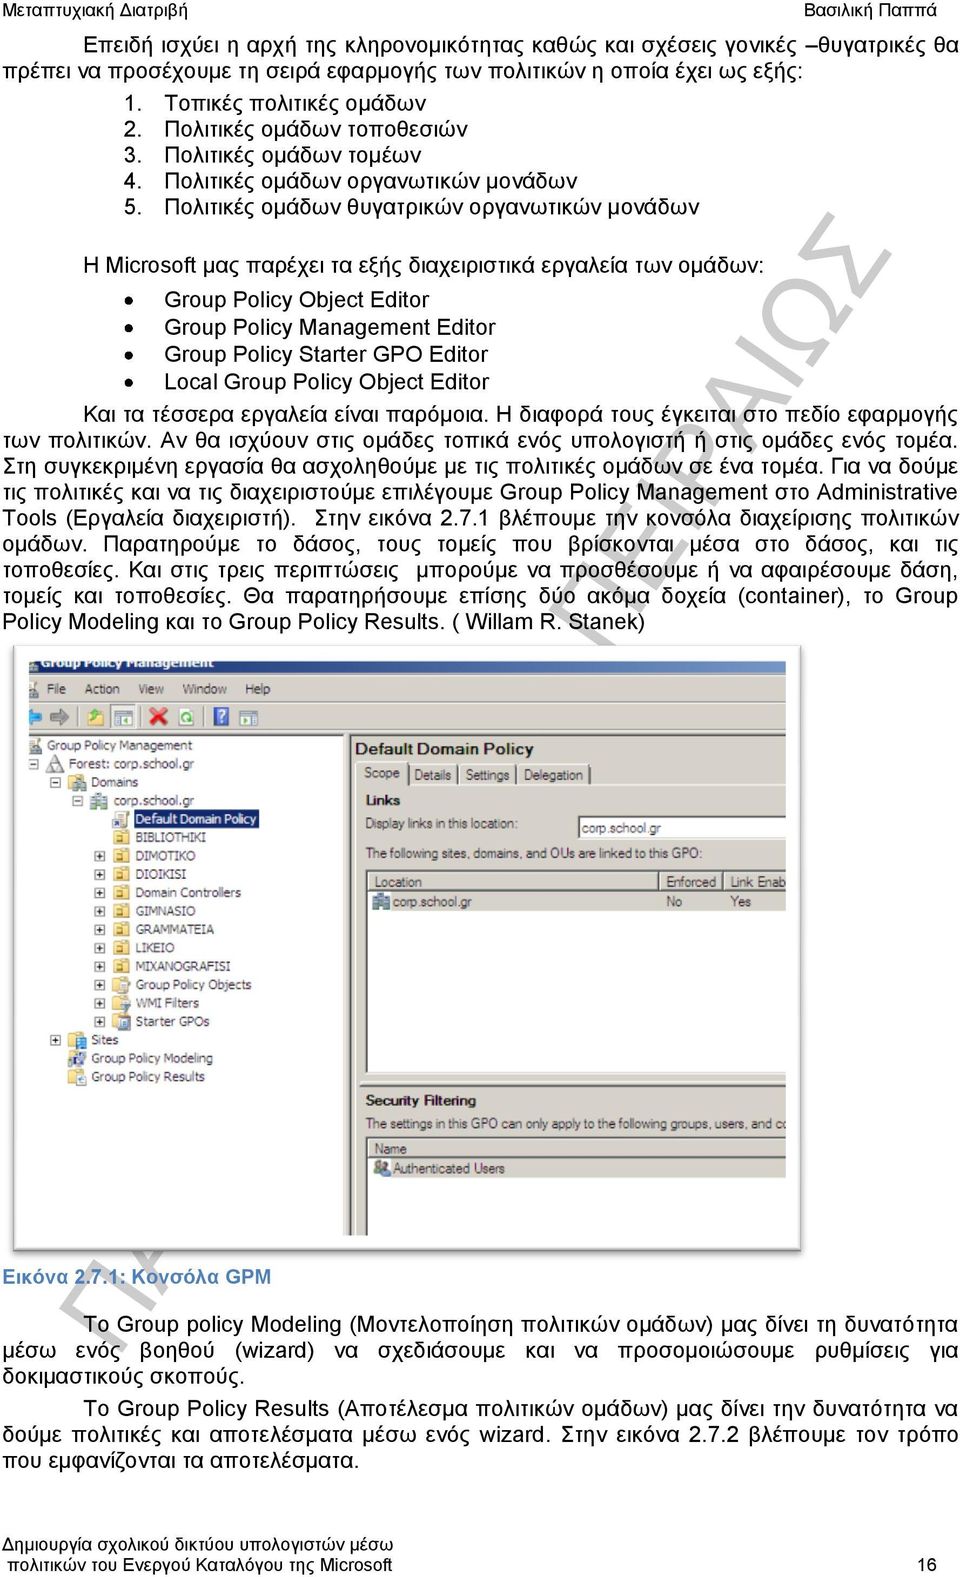 Πολιτικές ομάδων θυγατρικών οργανωτικών μονάδων Η Microsoft μας παρέχει τα εξής διαχειριστικά εργαλεία των ομάδων: Group Policy Object Editor Group Policy Management Editor Group Policy Starter GPO